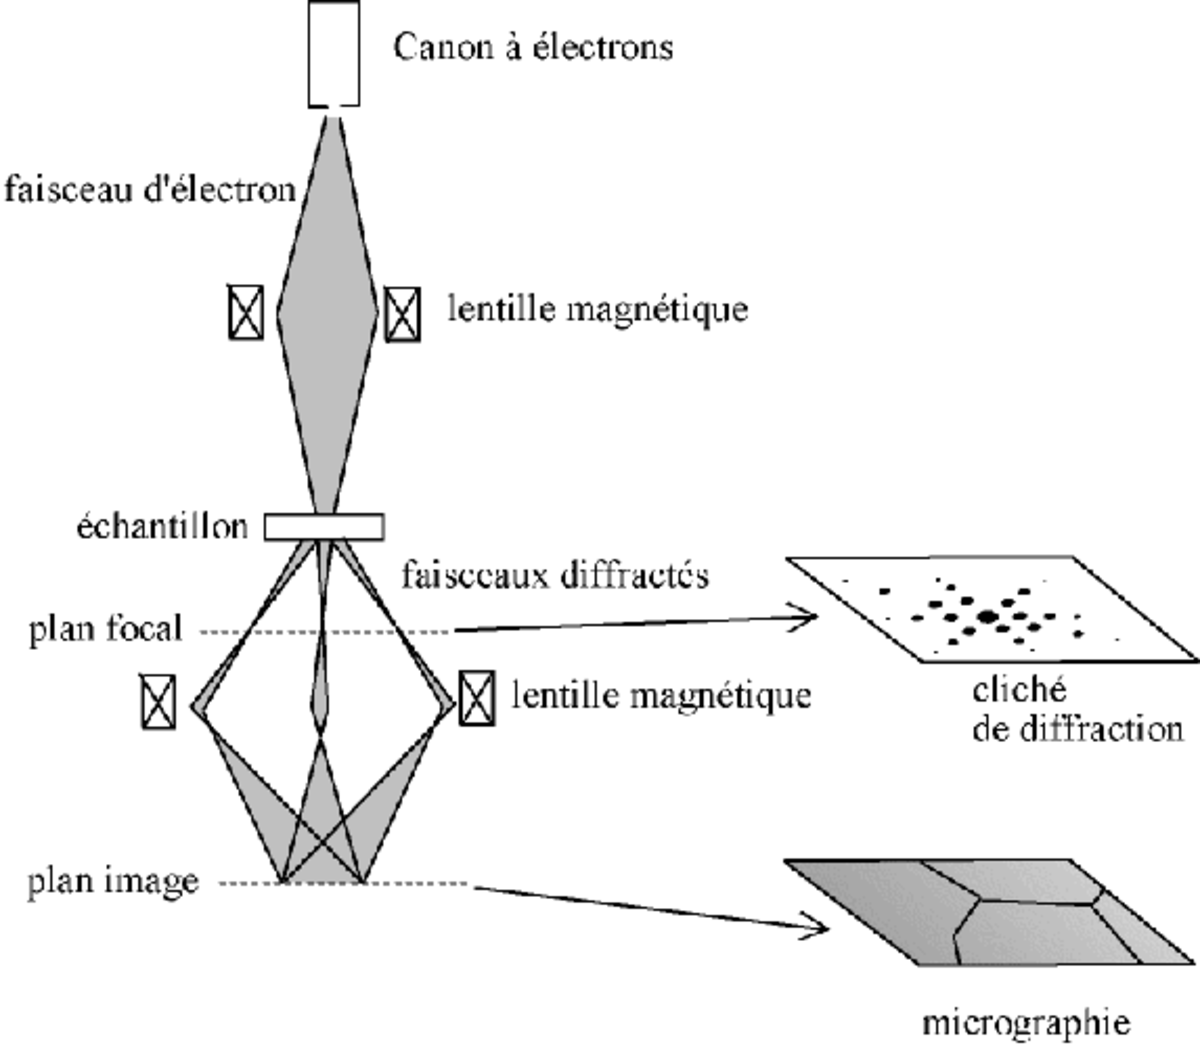 1-Schéma en coupe d'un microscope électronique en transmission